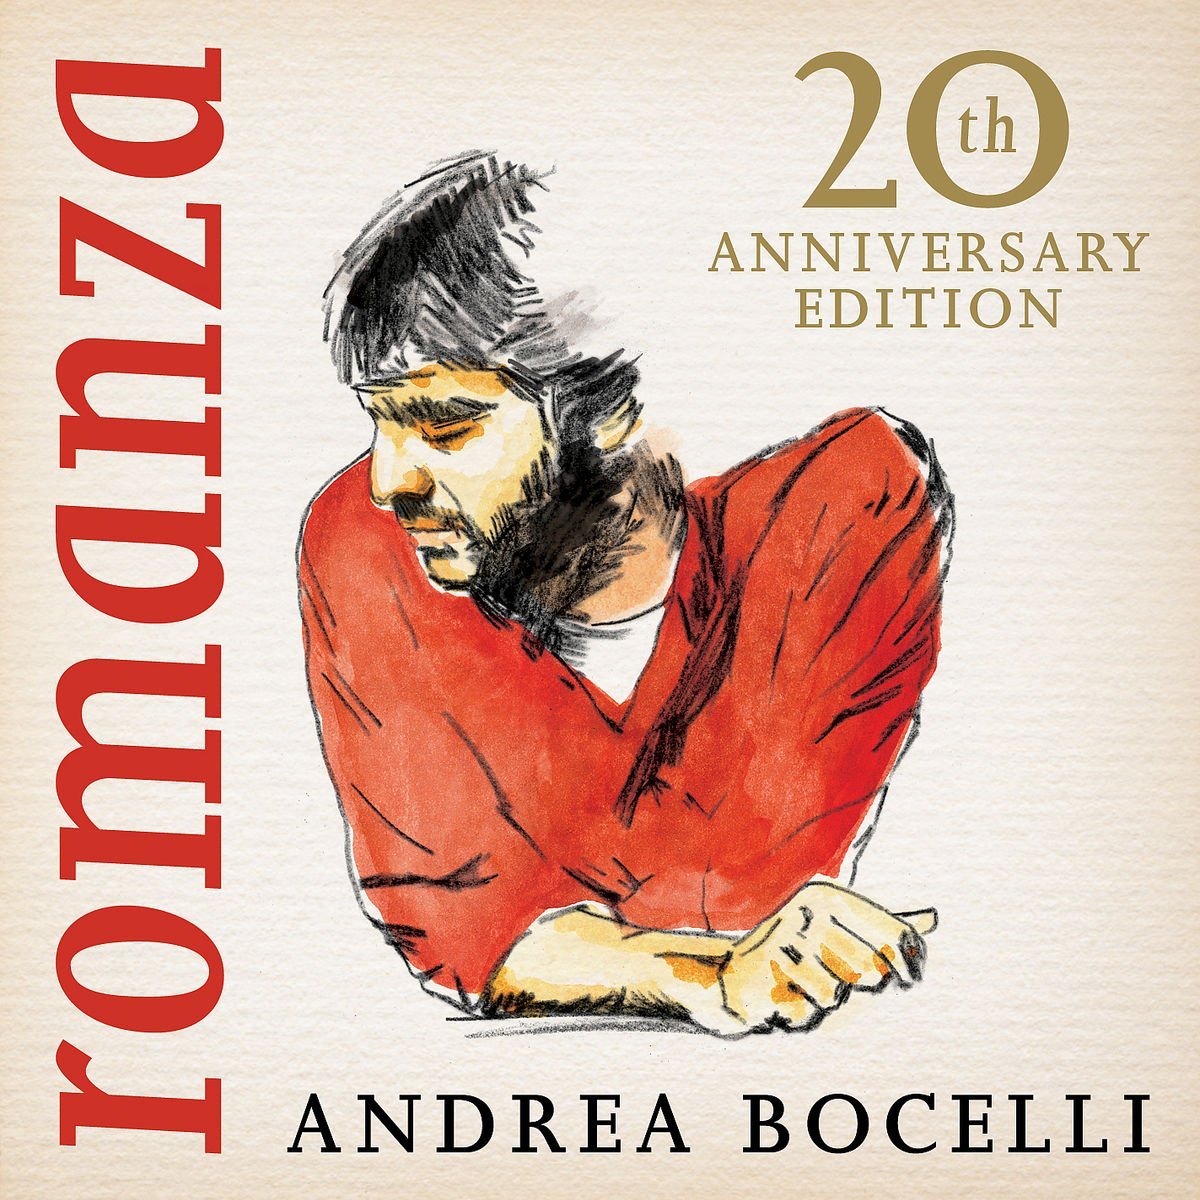 Andrea Bocelli – Romanza {20th Anniversary Edition Deluxe} (1996/2016) [HDTracks FLAC 24bit/96kHz]